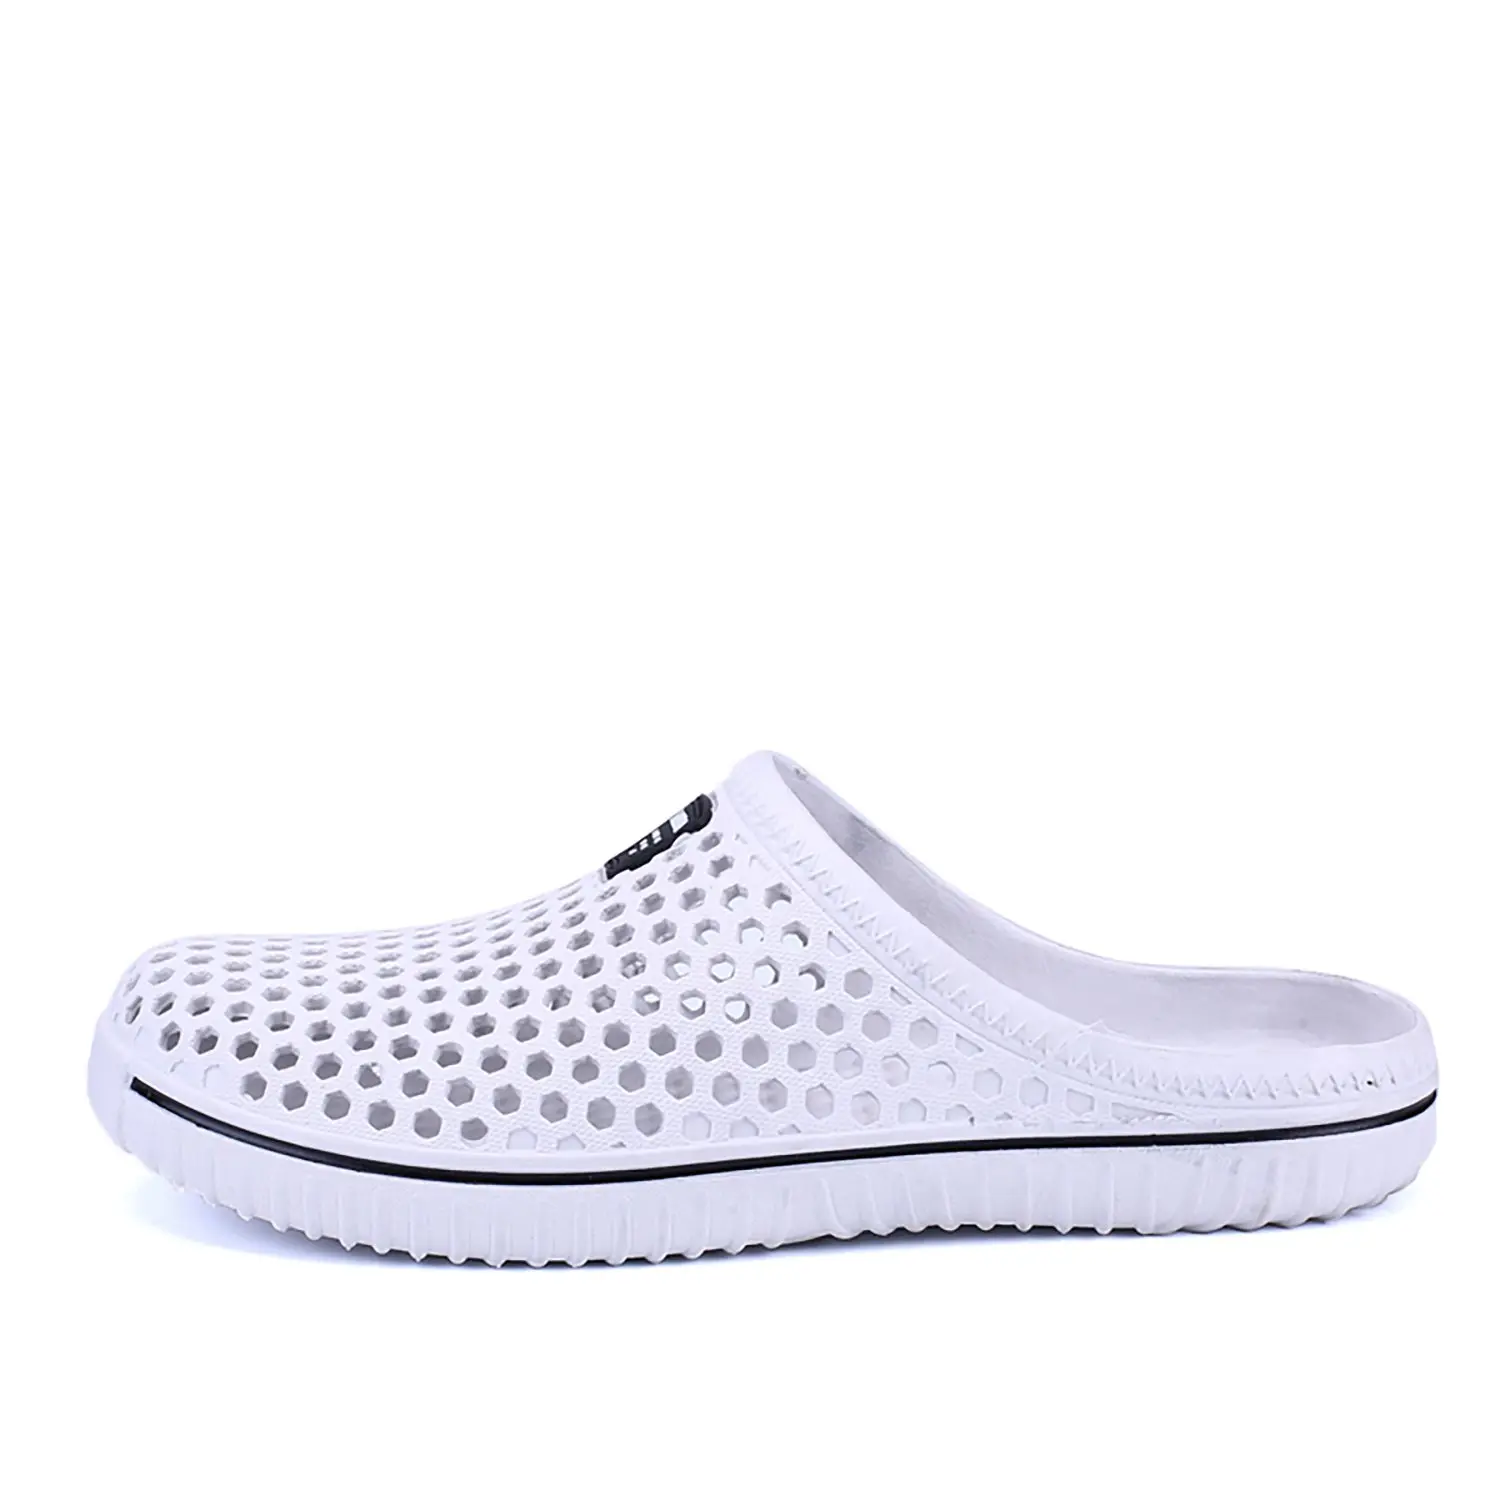 ABDB-новые летние сандалии, воздухопроницаемые кроссовки для мужчин, обувь, сабо, дышащие, пляжные, для бассейна, для ванной